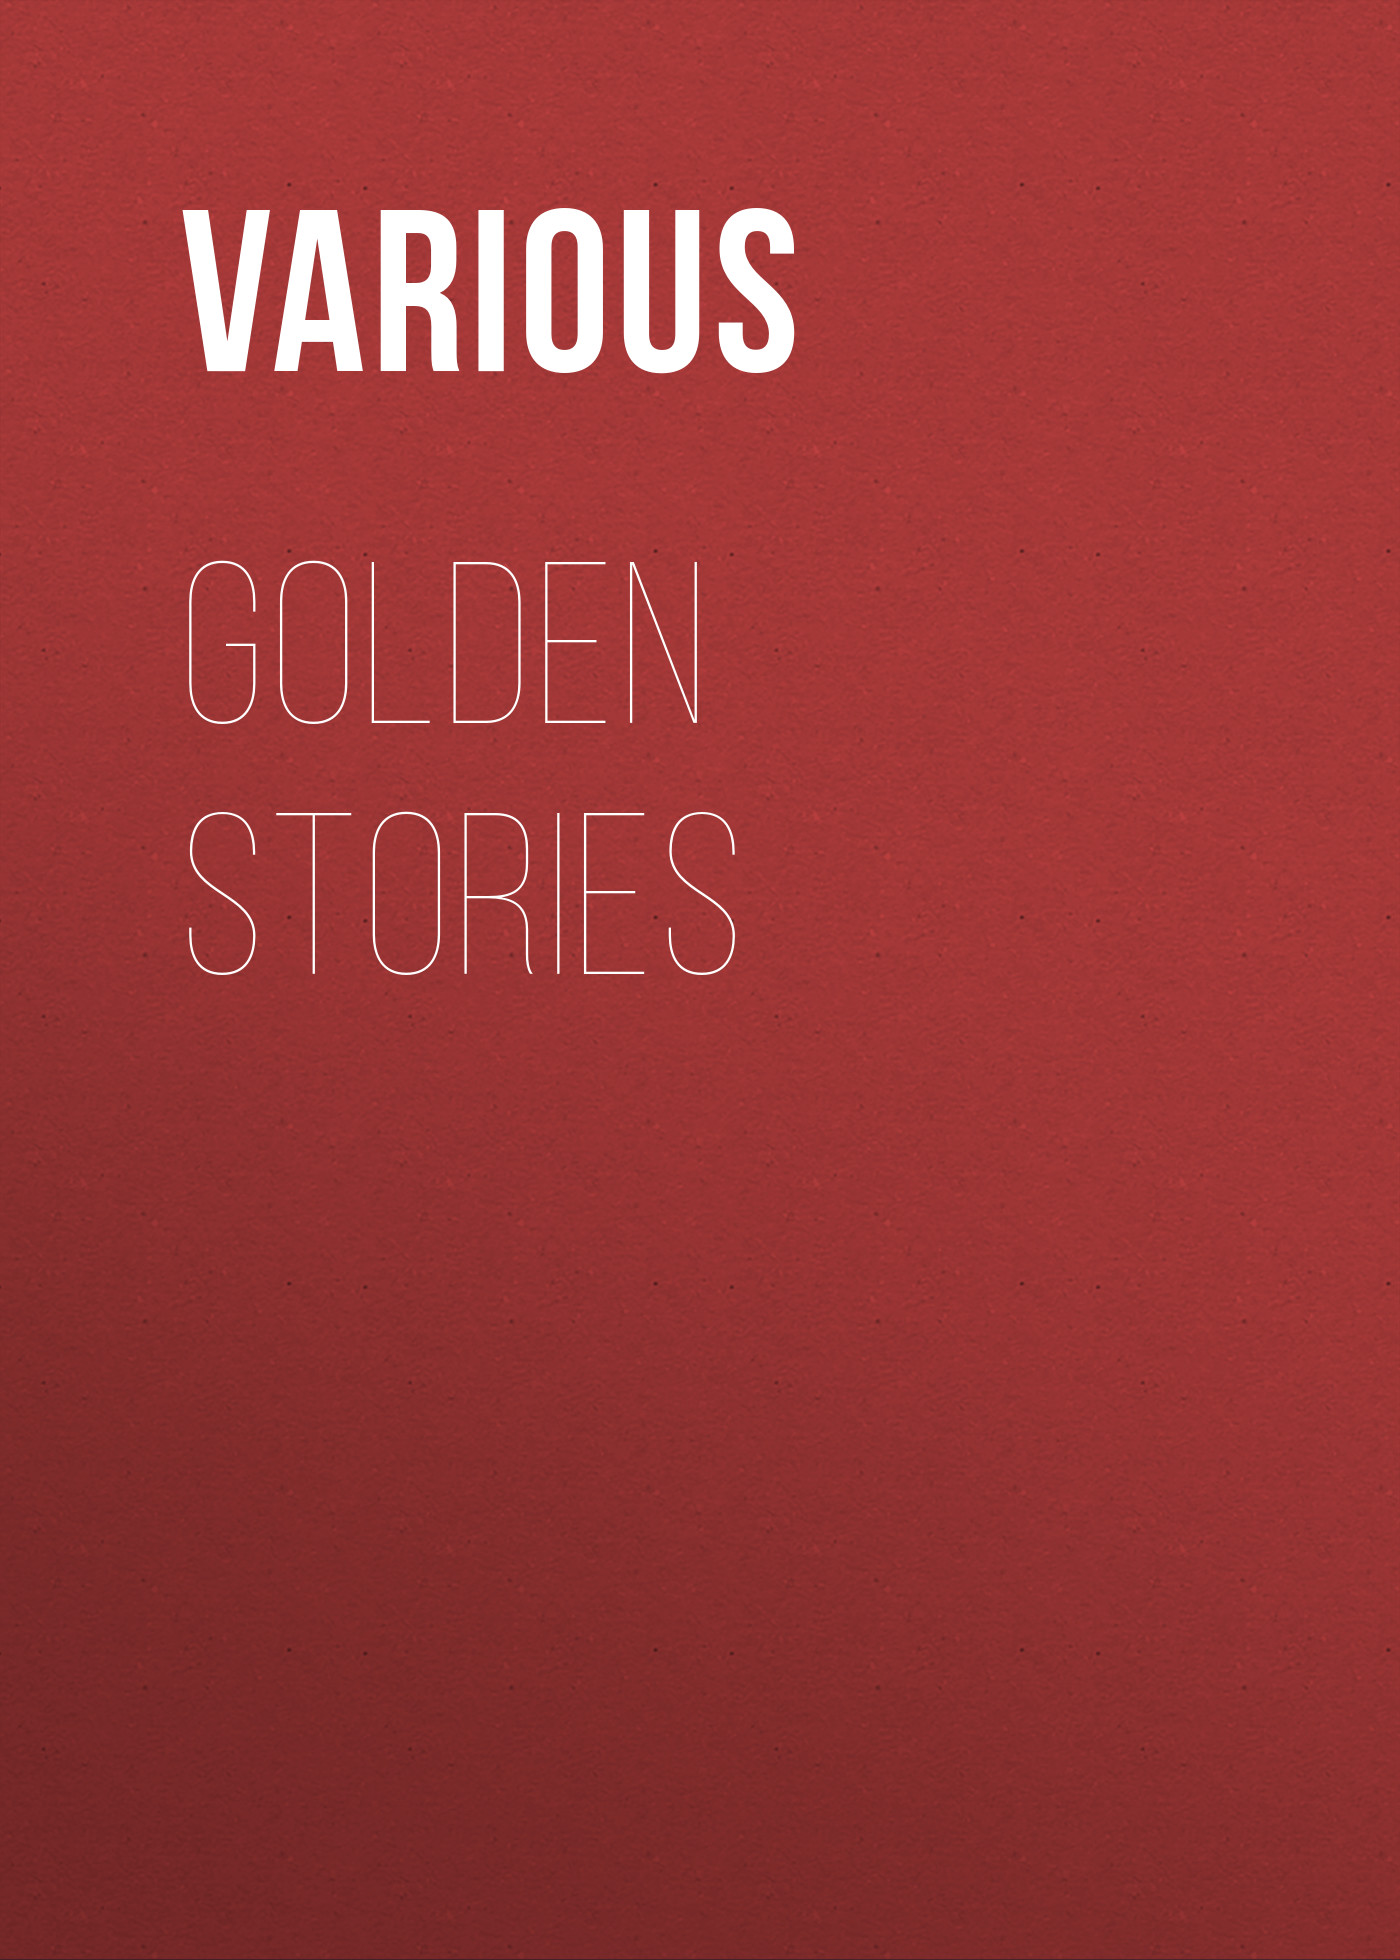 Книга Golden Stories из серии , созданная  Various, может относится к жанру Зарубежная классика, Зарубежная старинная литература. Стоимость электронной книги Golden Stories с идентификатором 35495439 составляет 0 руб.